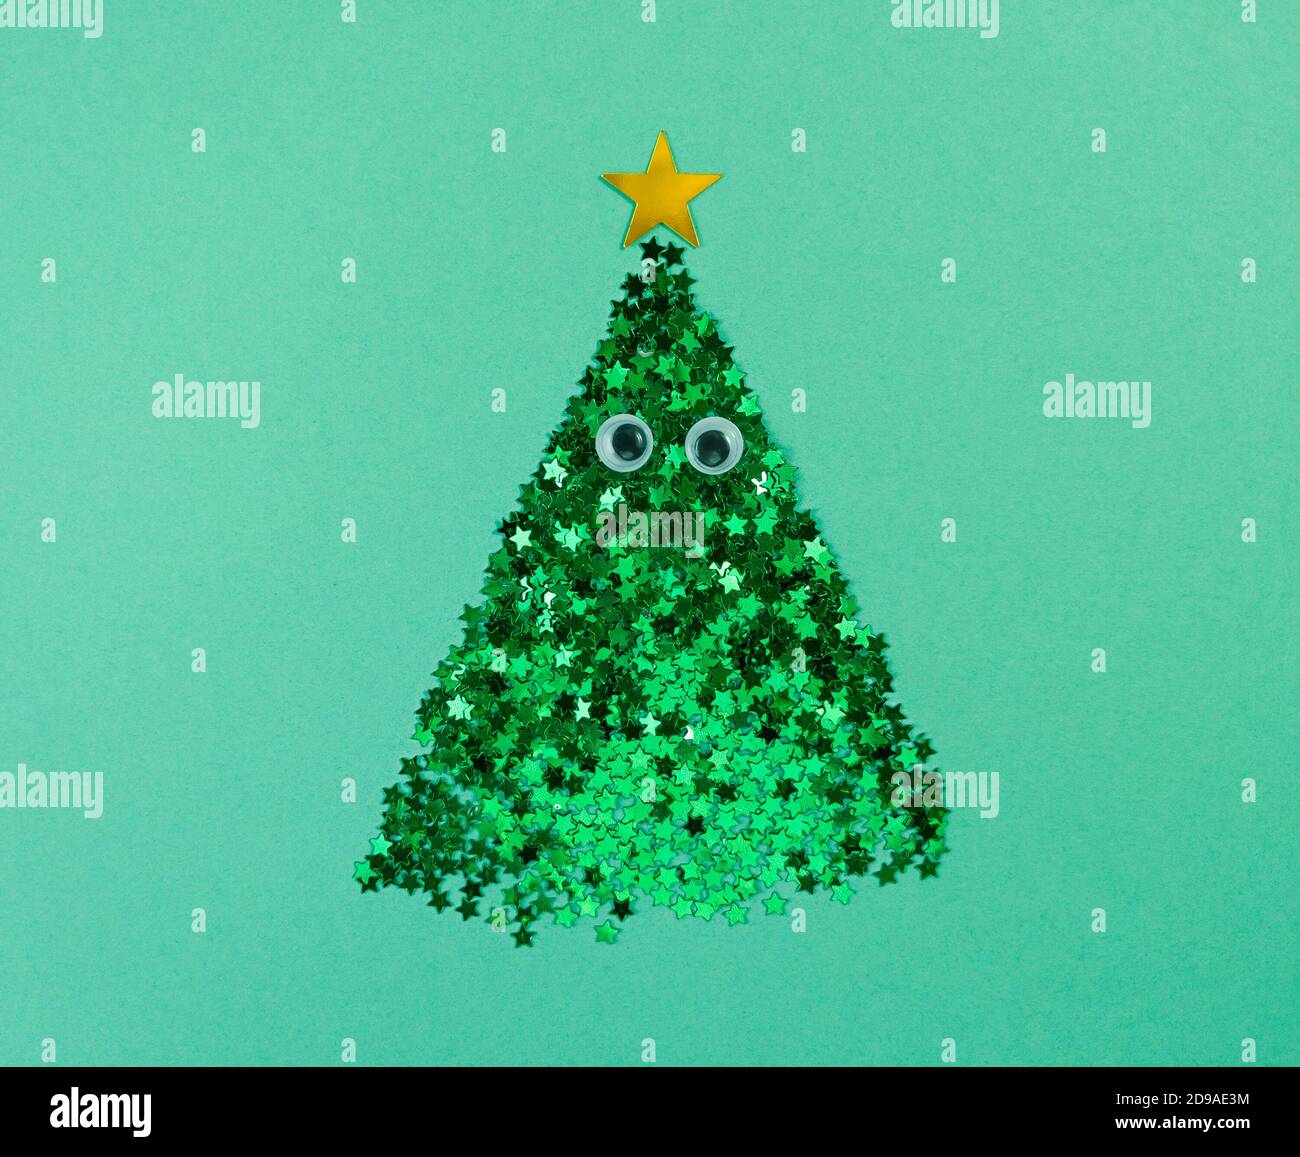 Weihnachtsbaumform aus Konfetti-Sternen mit Augen auf grünem Papier. Stockfoto